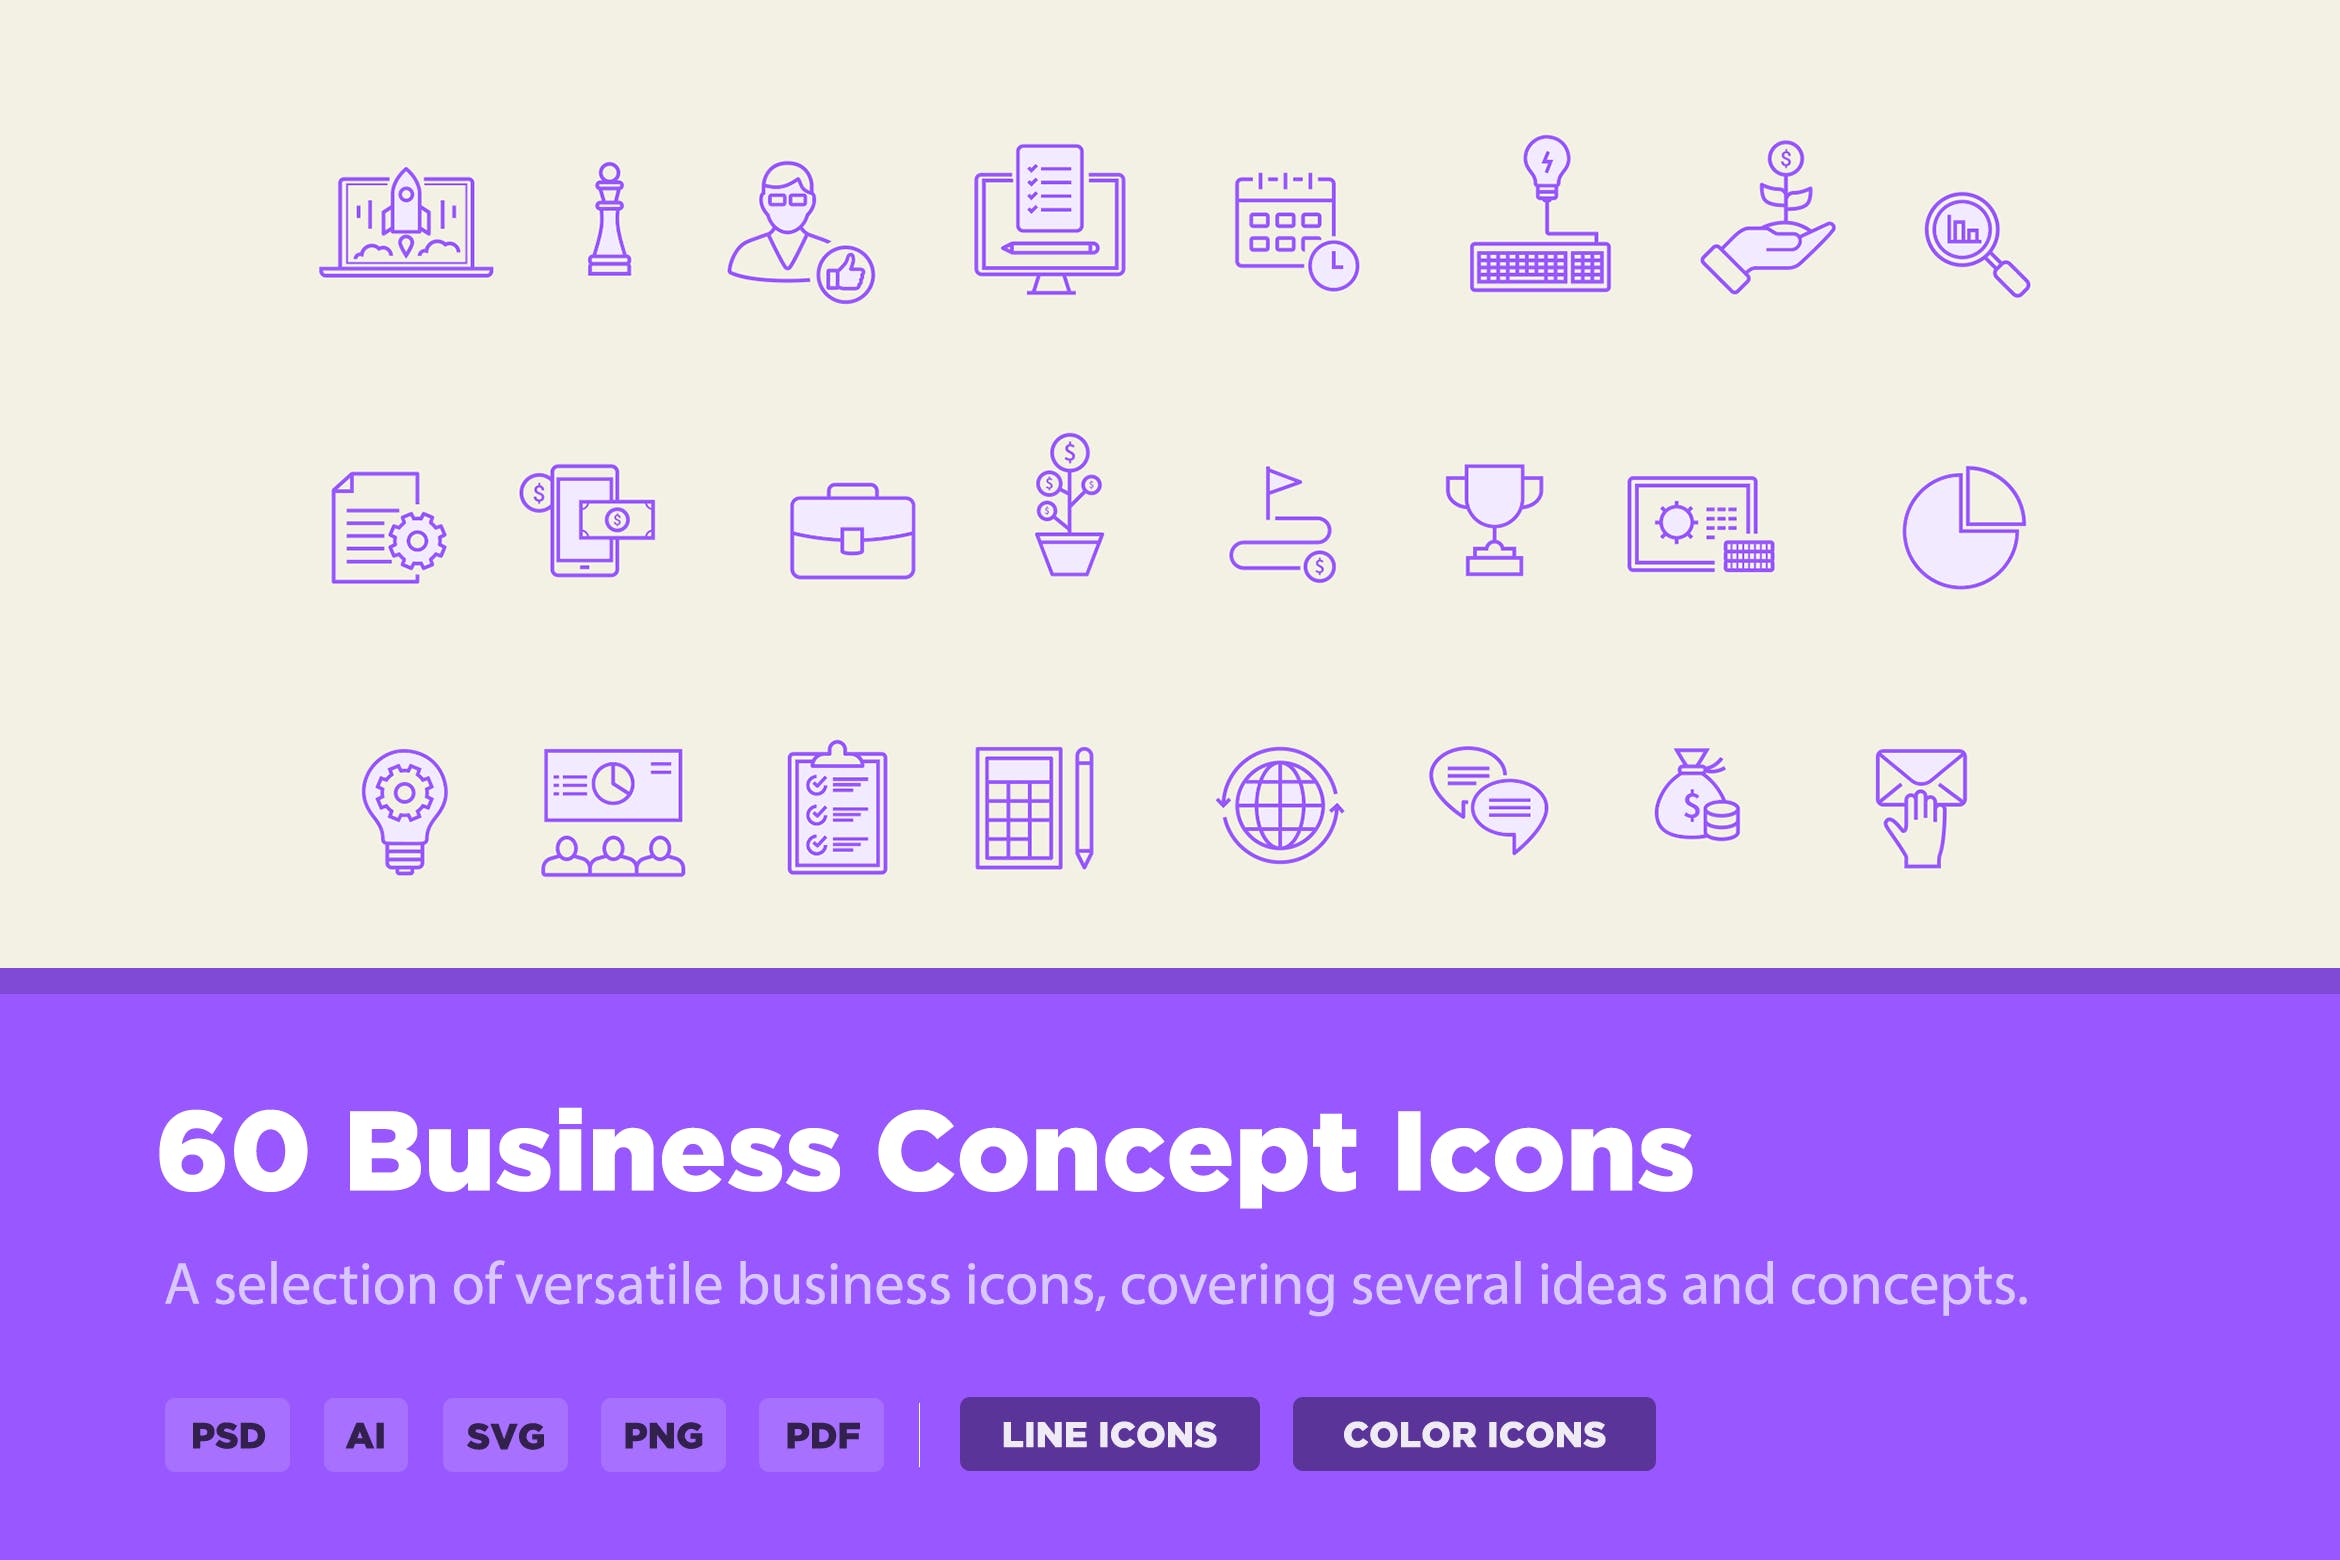 30枚商业概念矢量图标 30 Business Concept Icons插图